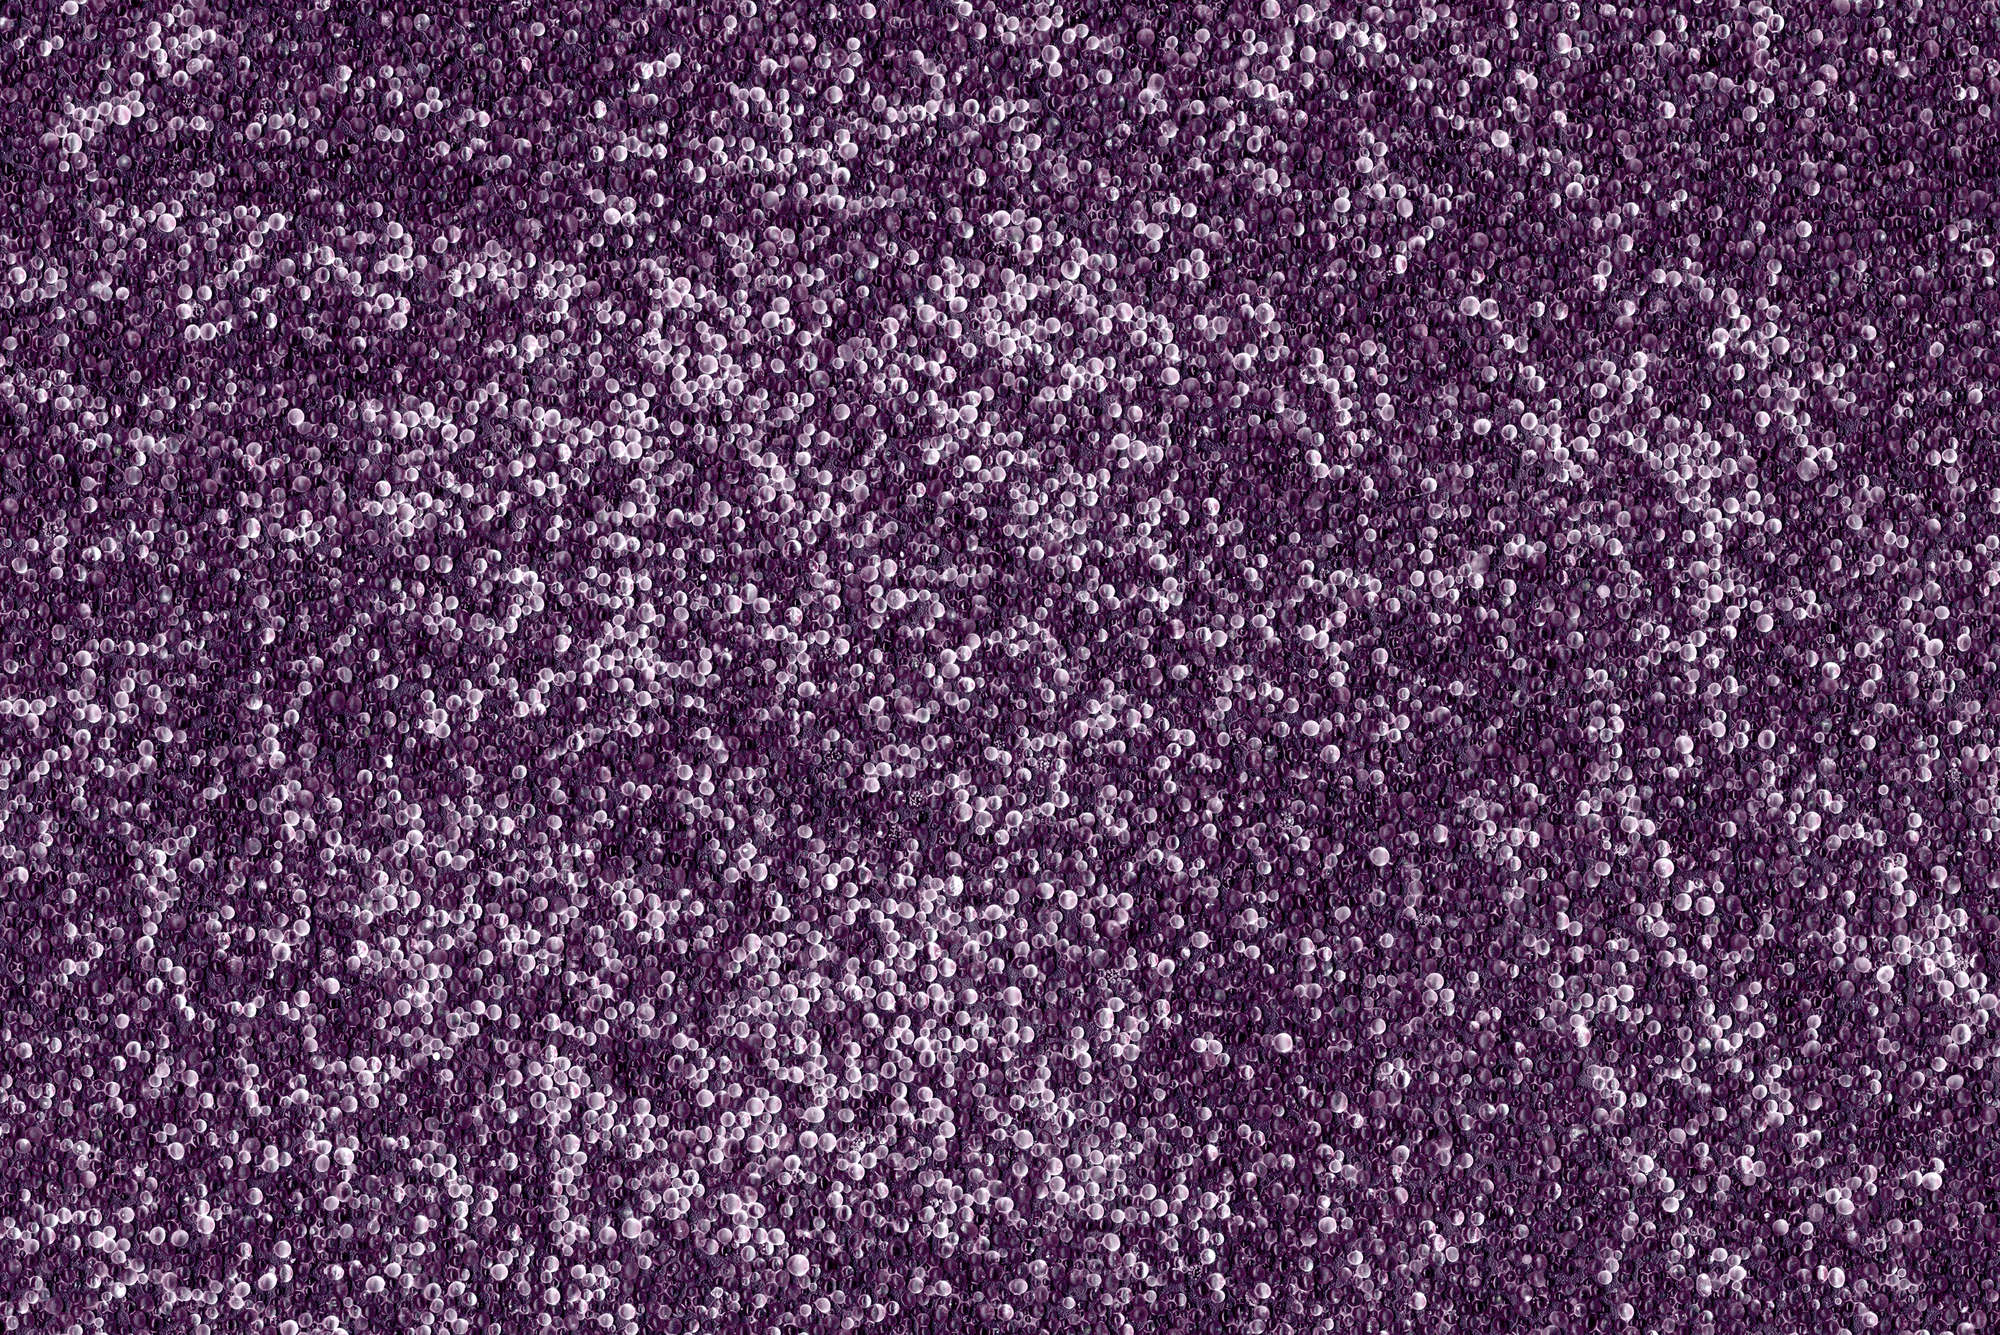             papiers peints à impression numérique nombreuses petites billes en violet - intissé structuré
        